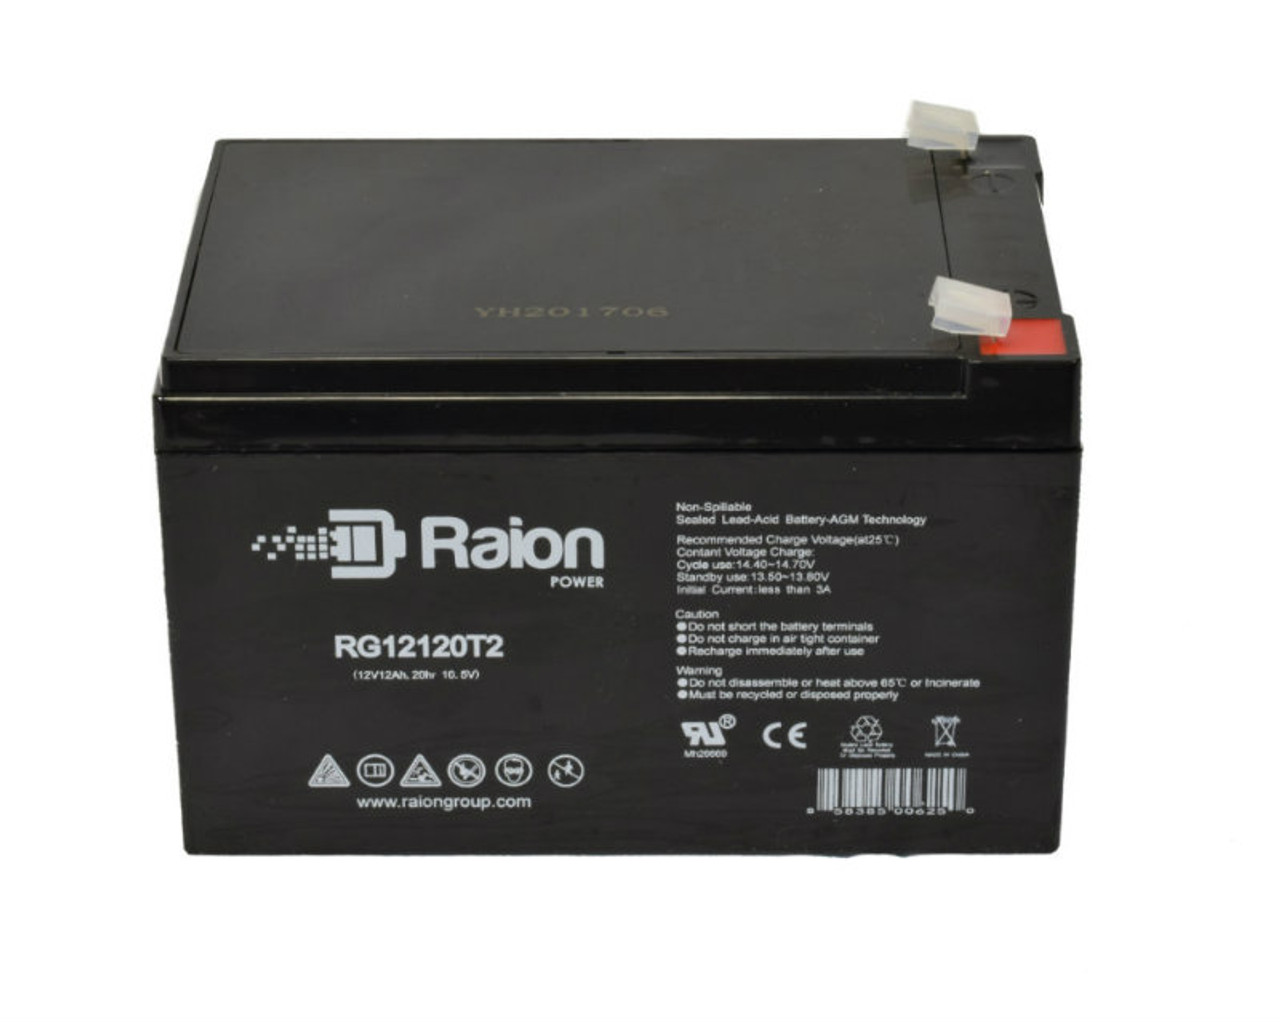 Raion Power RG12120T2 SLA Battery for Magnavolt SLA12-14